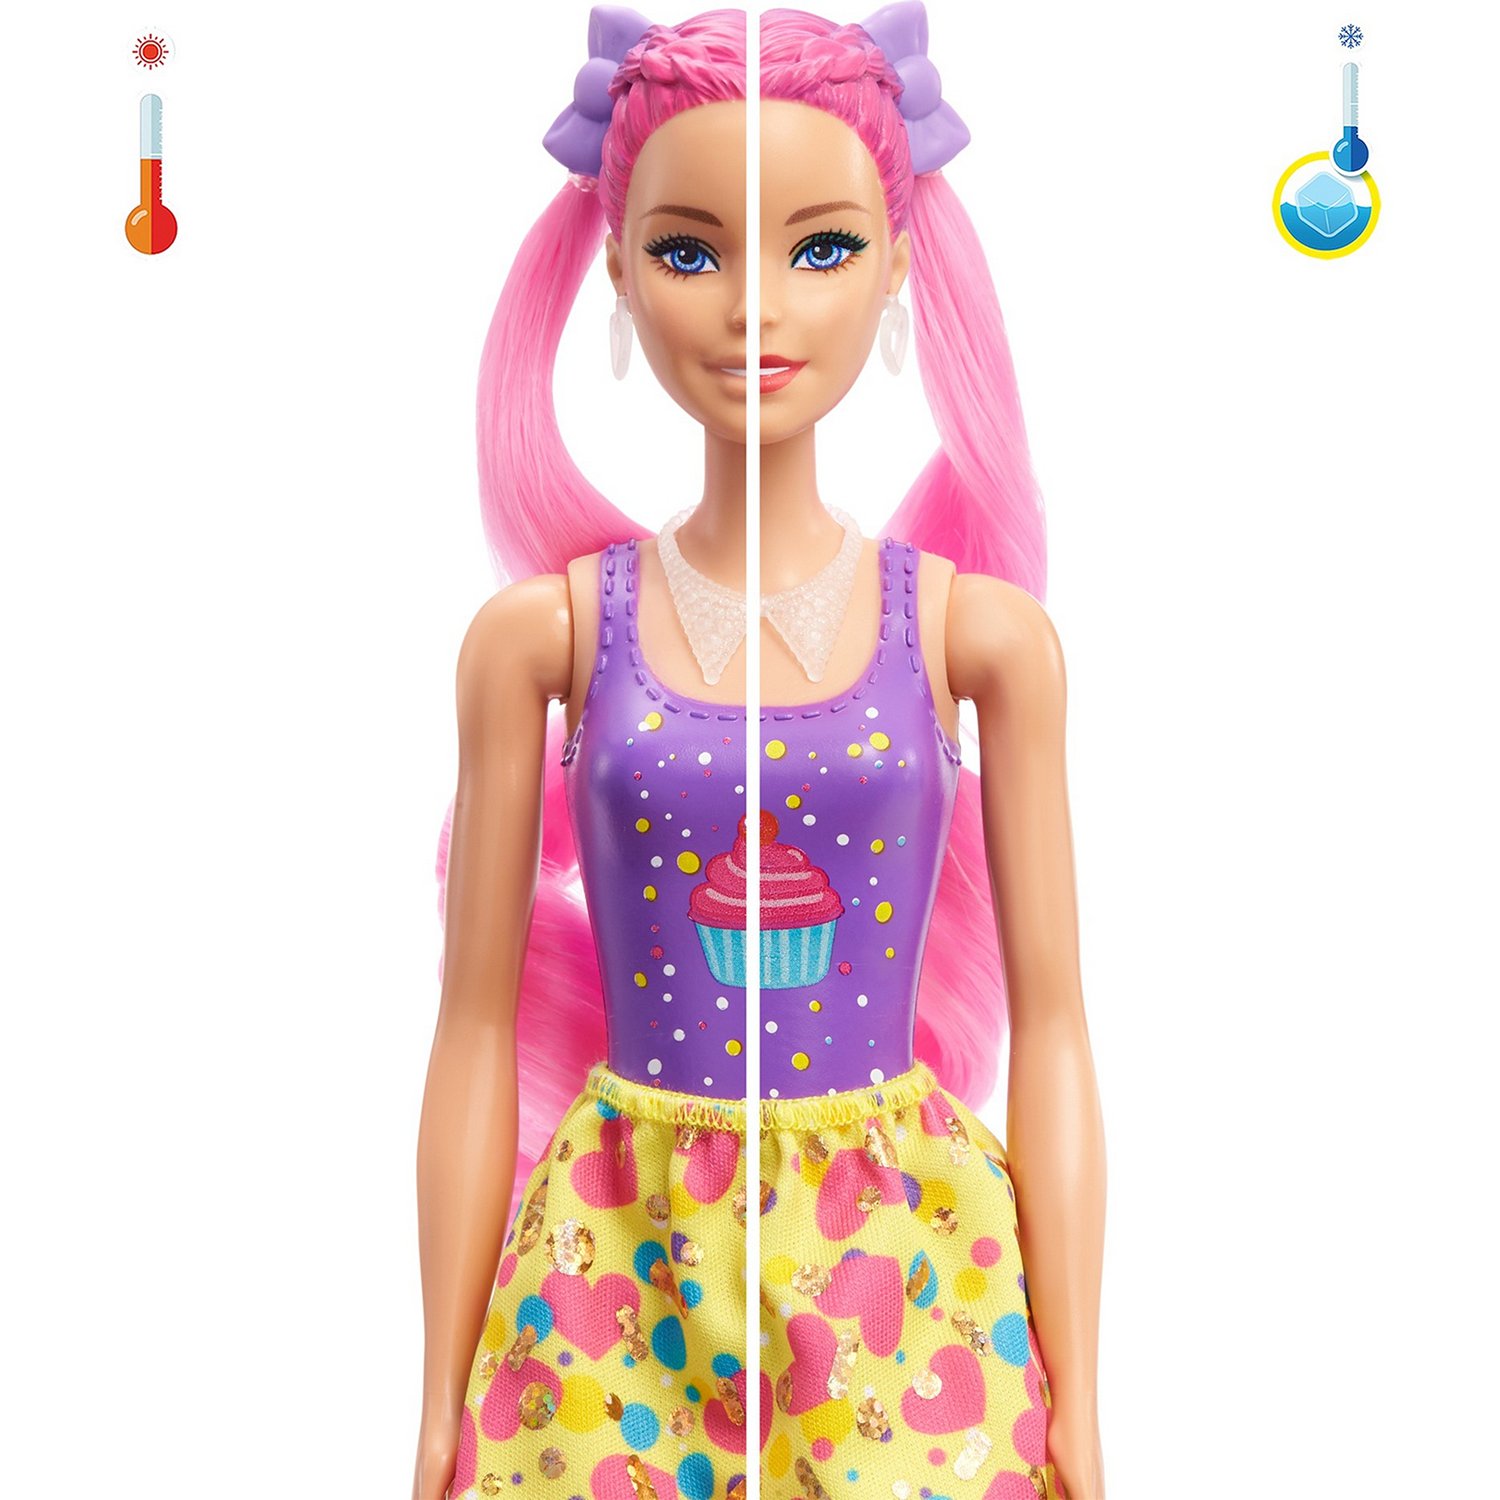 Кукла Barbie Сюрприз из серии Блеск: Сменные прически в непрозрачной упаковке 25 сюр